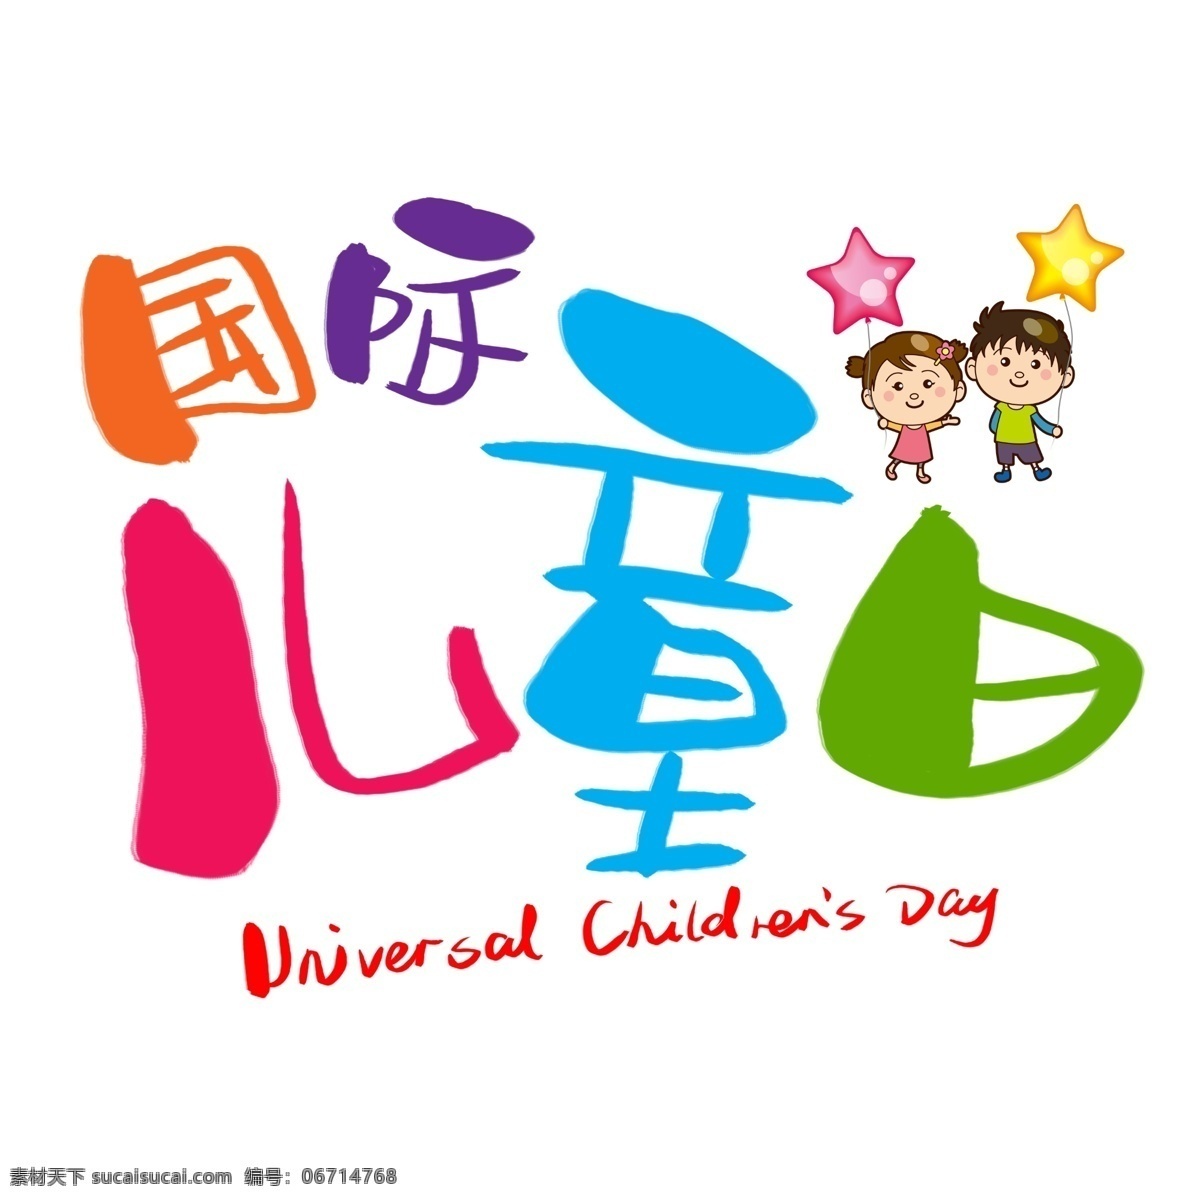 国际 儿童 日 手写 手绘 卡通 可爱 pop 书法艺术 字 儿童日 day 儿童节 universal childrens